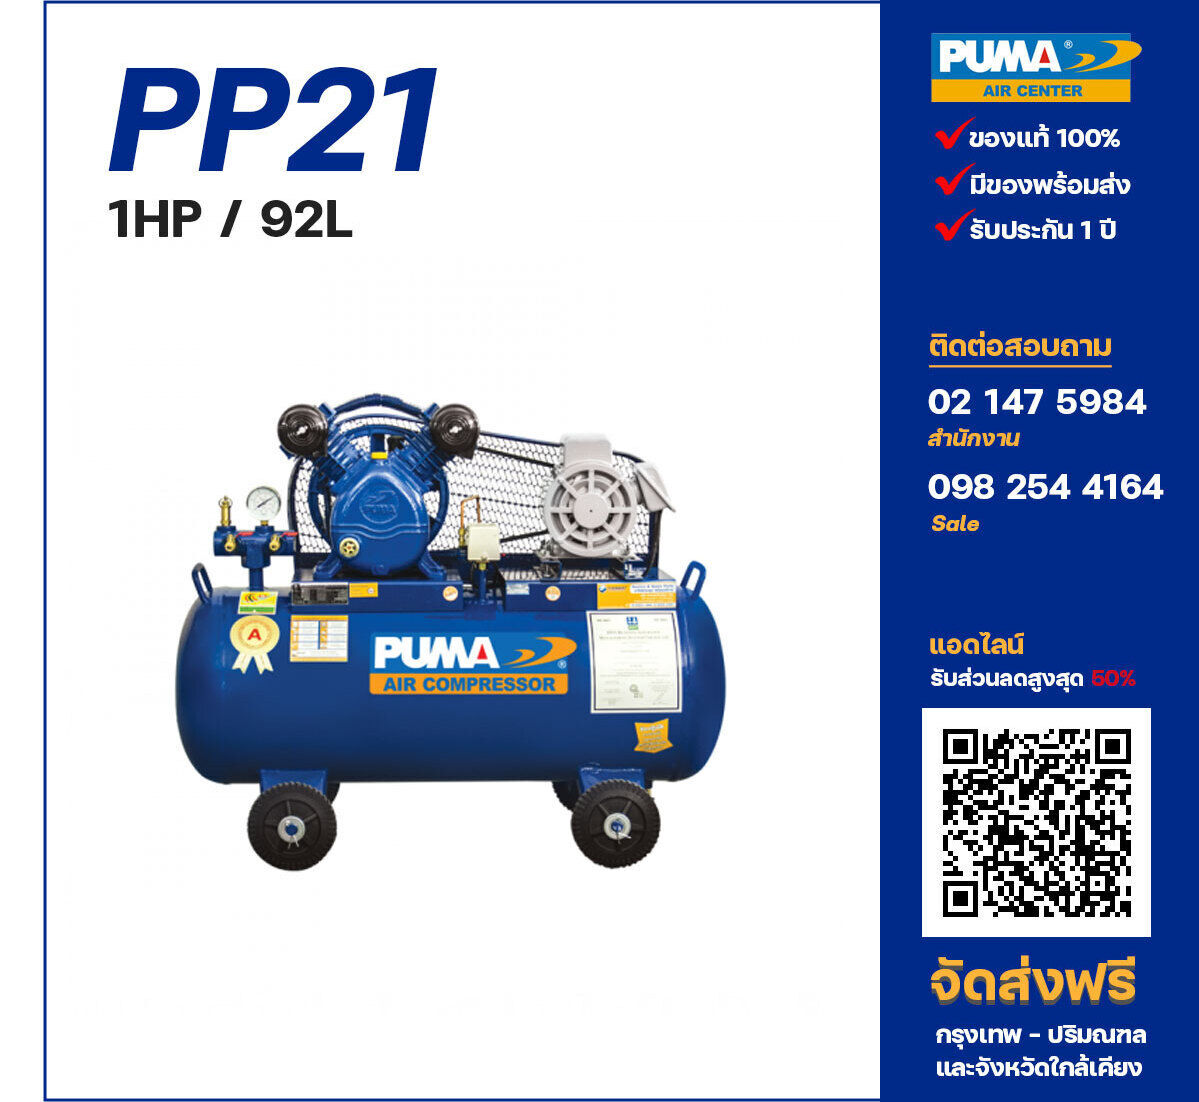 ปั๊มลมพูม่า PUMA PP21-PPM220V ปั๊มลมลูกสูบ ขนาด 2 สูบ 1 แรงม้า 92 ลิตร PUMA พร้อมมอเตอร์ PUMA ไฟ 220V ส่งฟรี กรุงเทพฯ-ปริมณฑล รับประกัน 1 ปี